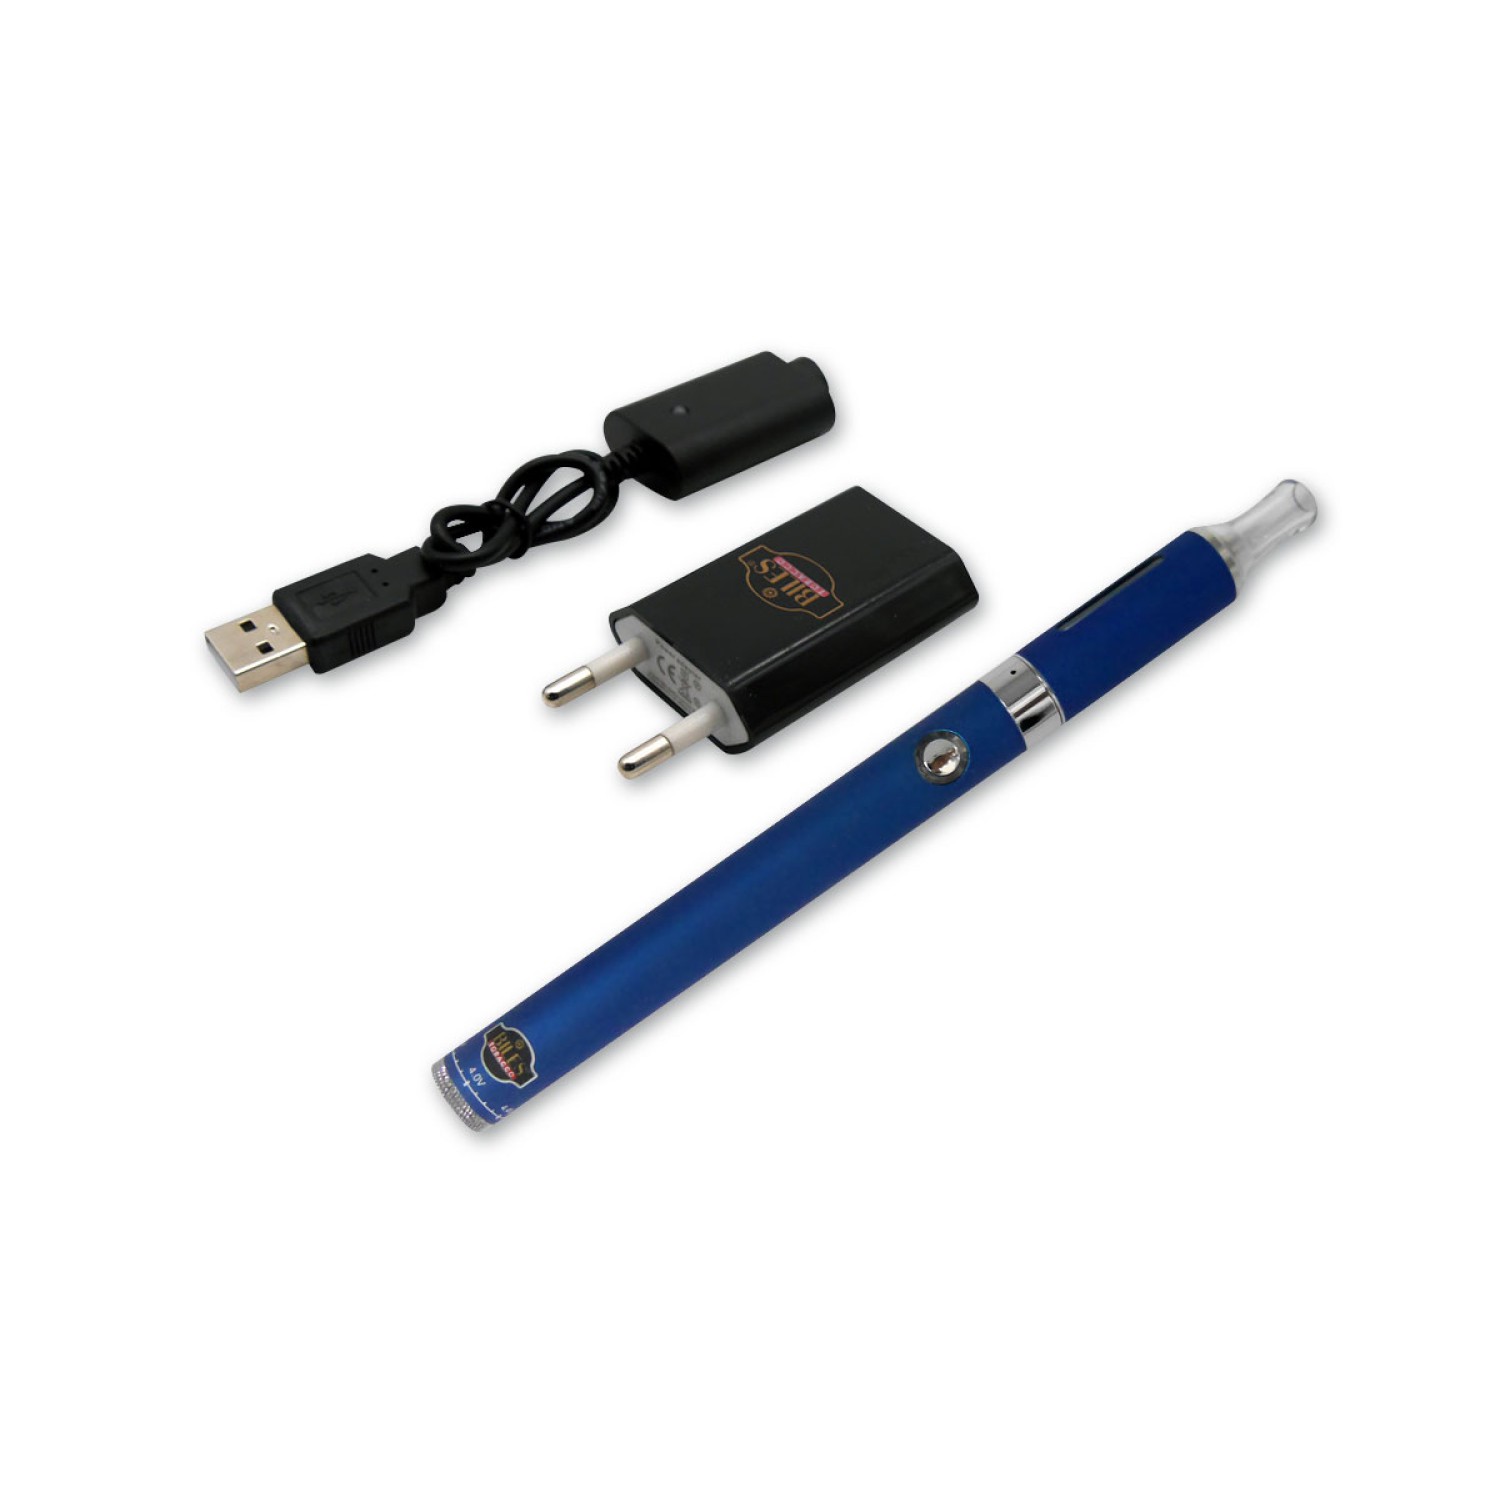 Biles - E-Zigarette - Blau - Elektronische Zigarette - inkl. Akku und Ladegerät